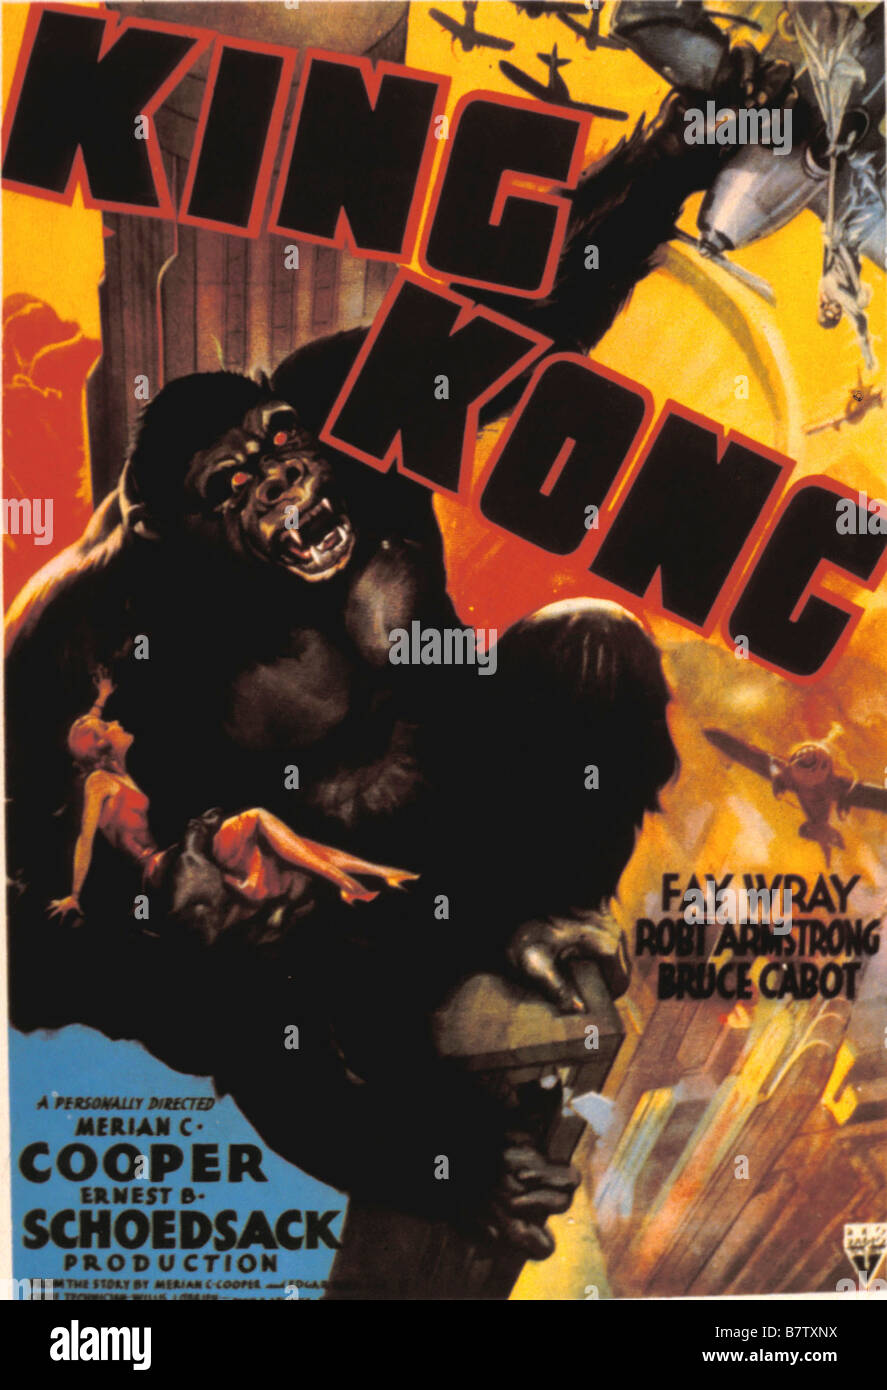 King Kong Anno: 1933 registi USA: Merian C. Cooper e Ernest B. Schoedsack poster del filmato Foto Stock